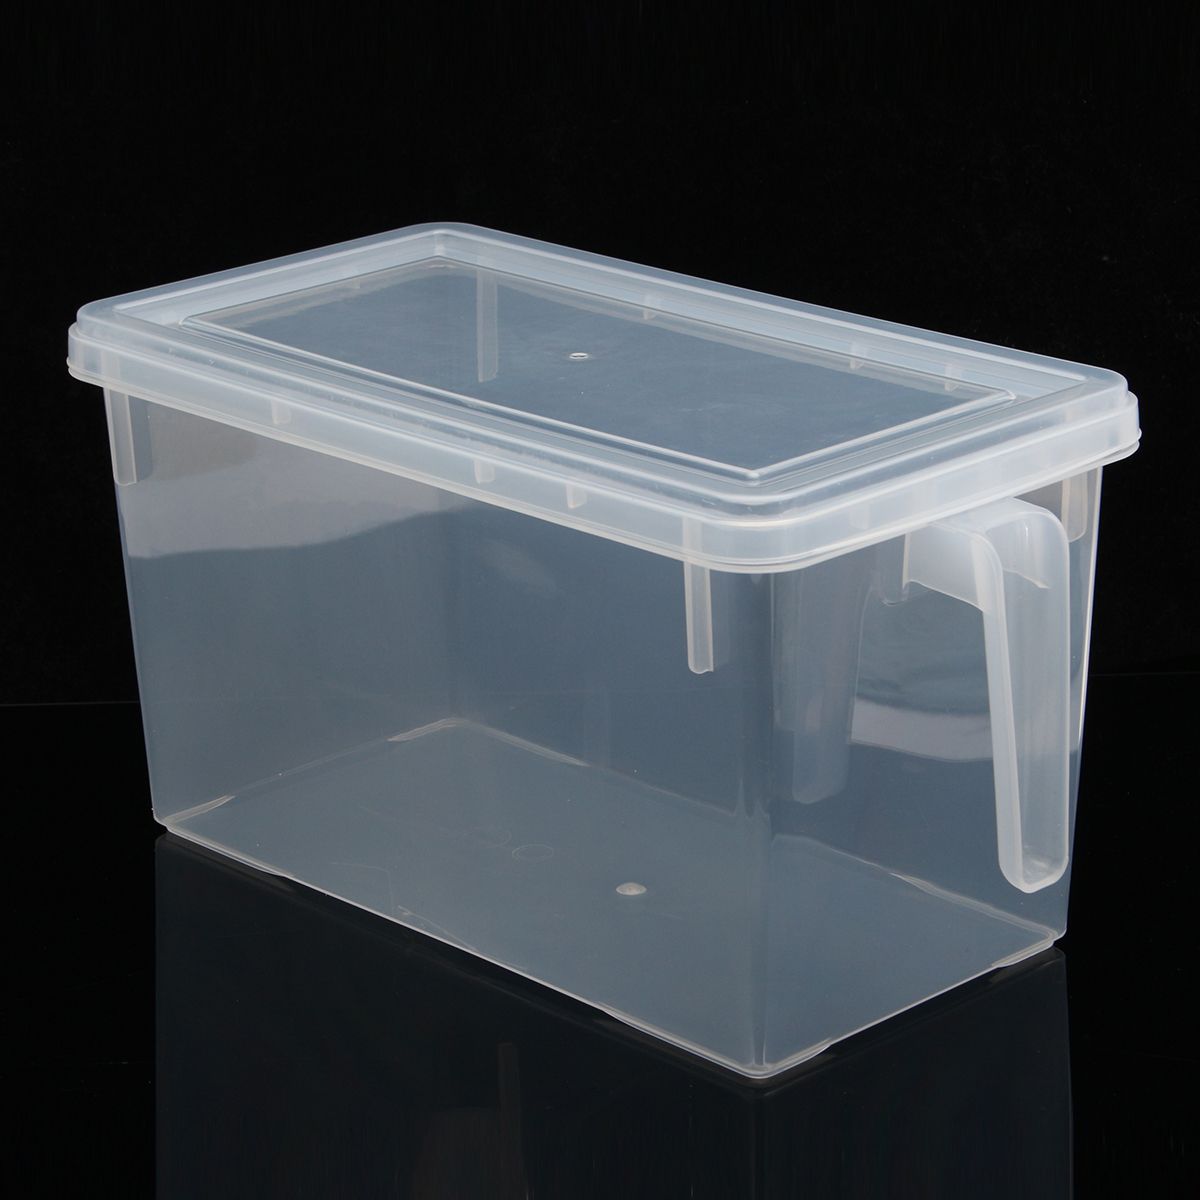 47L-Kitchen-Food-Storage-Box-Sealed-Crisper-Refrigerator-Organizer-Container-Preservation-1179295